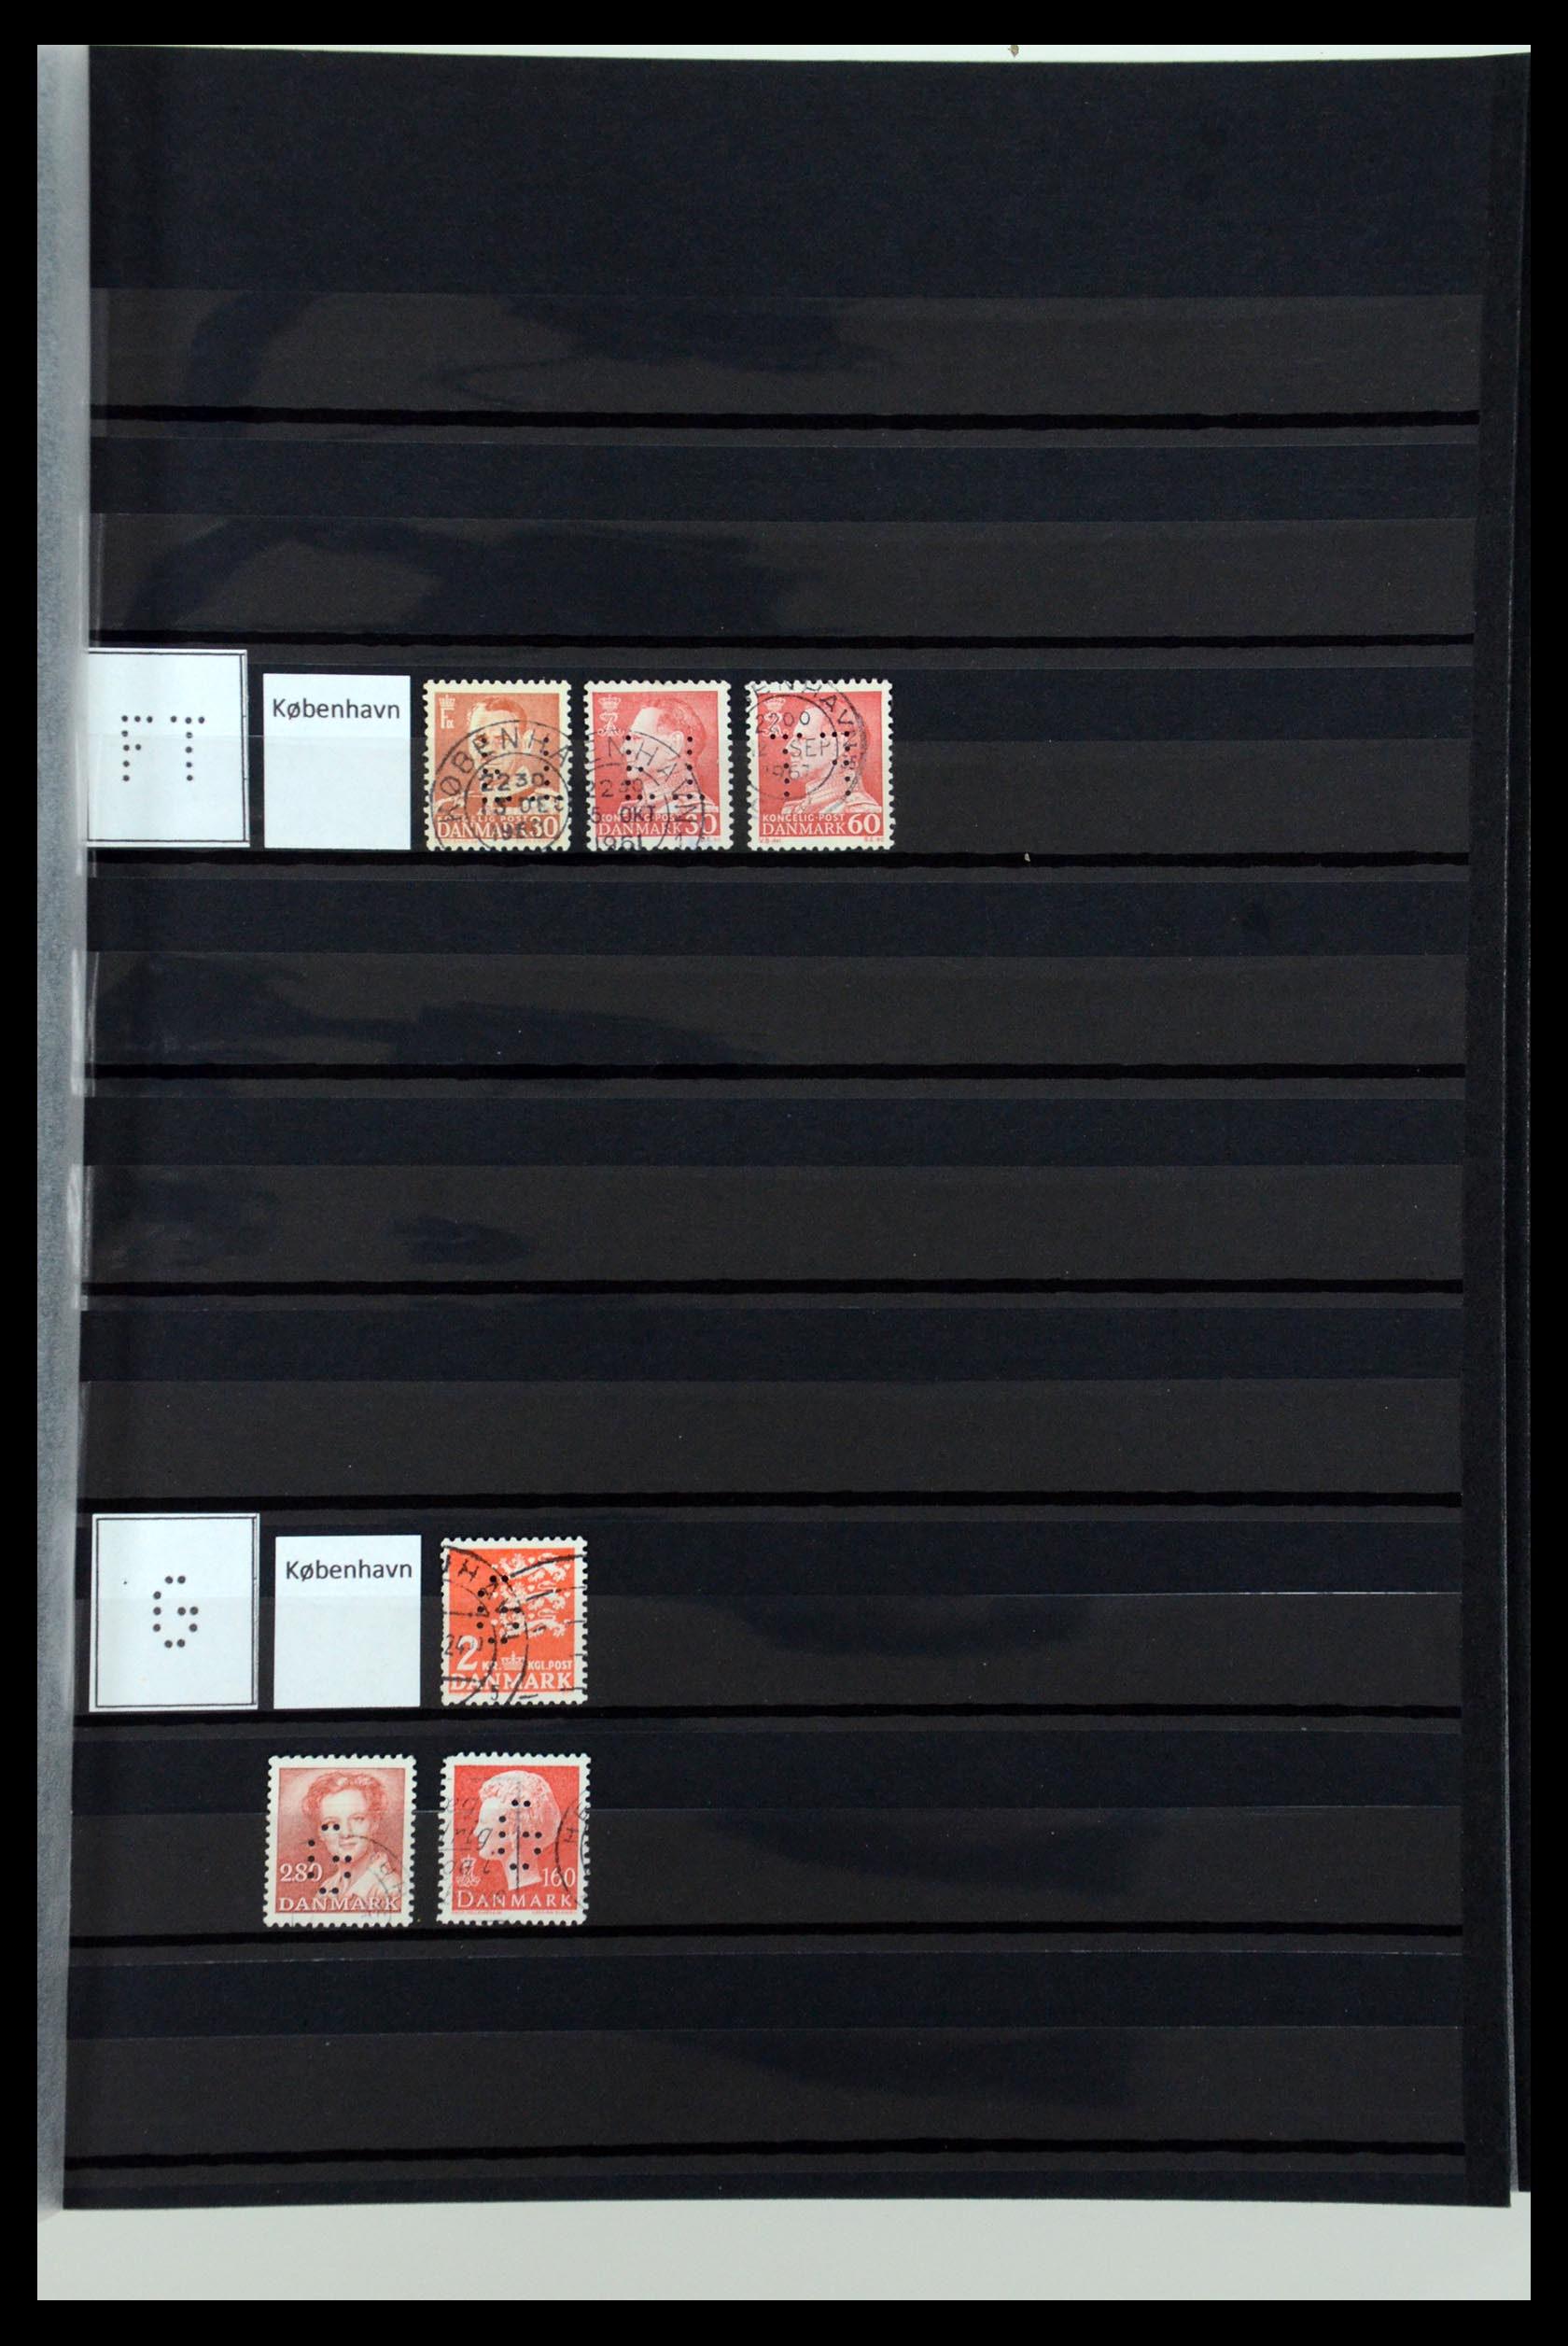 36396 077 - Postzegelverzameling 36396 Denemarken perfins.